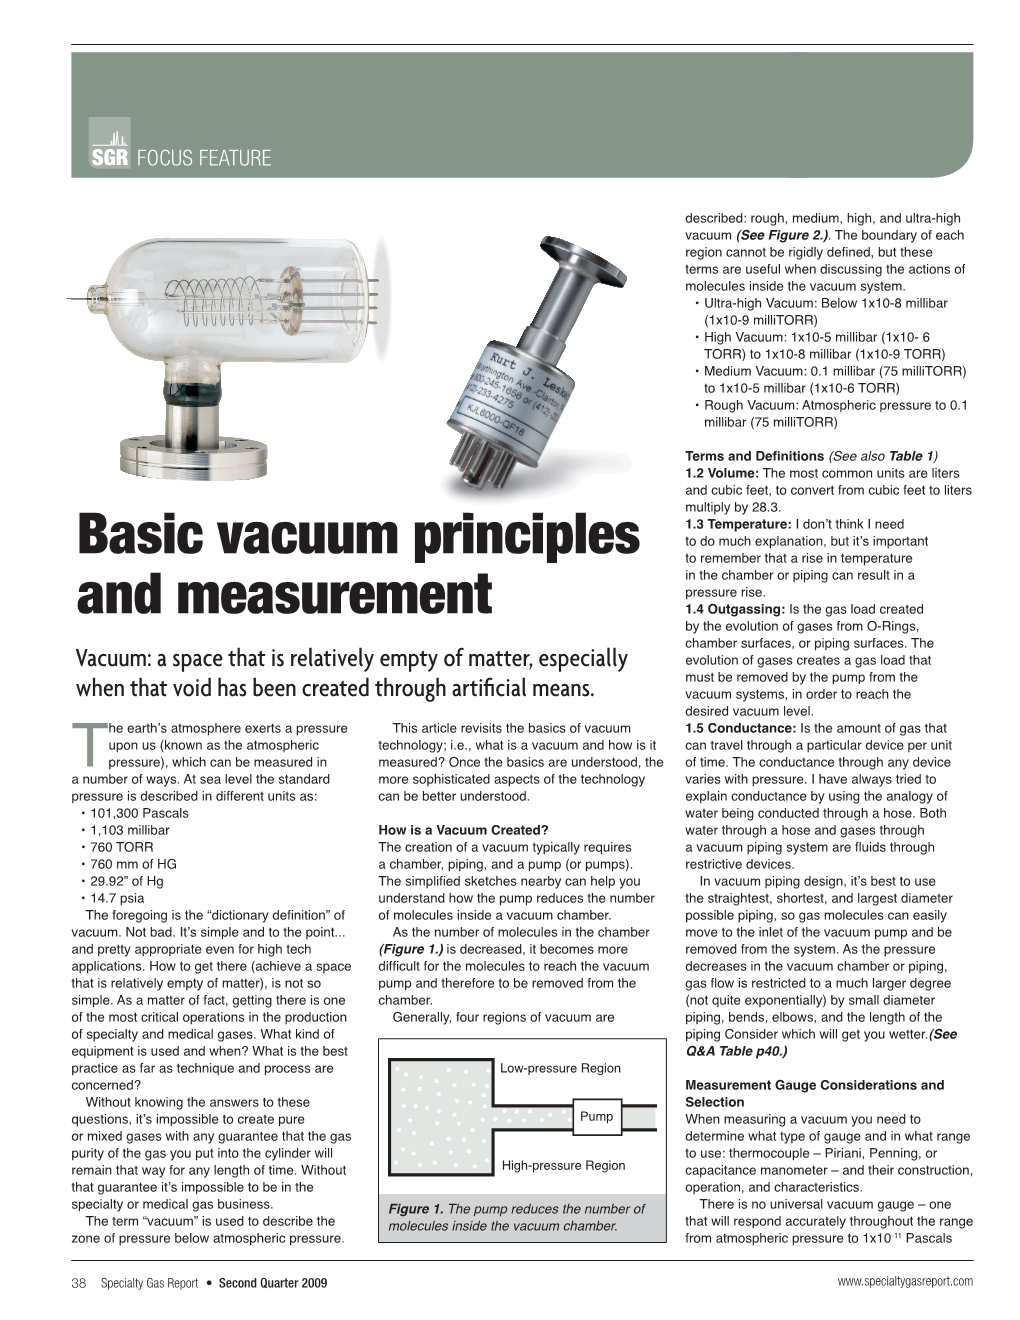 Basic Vacuum Principles and Measurement